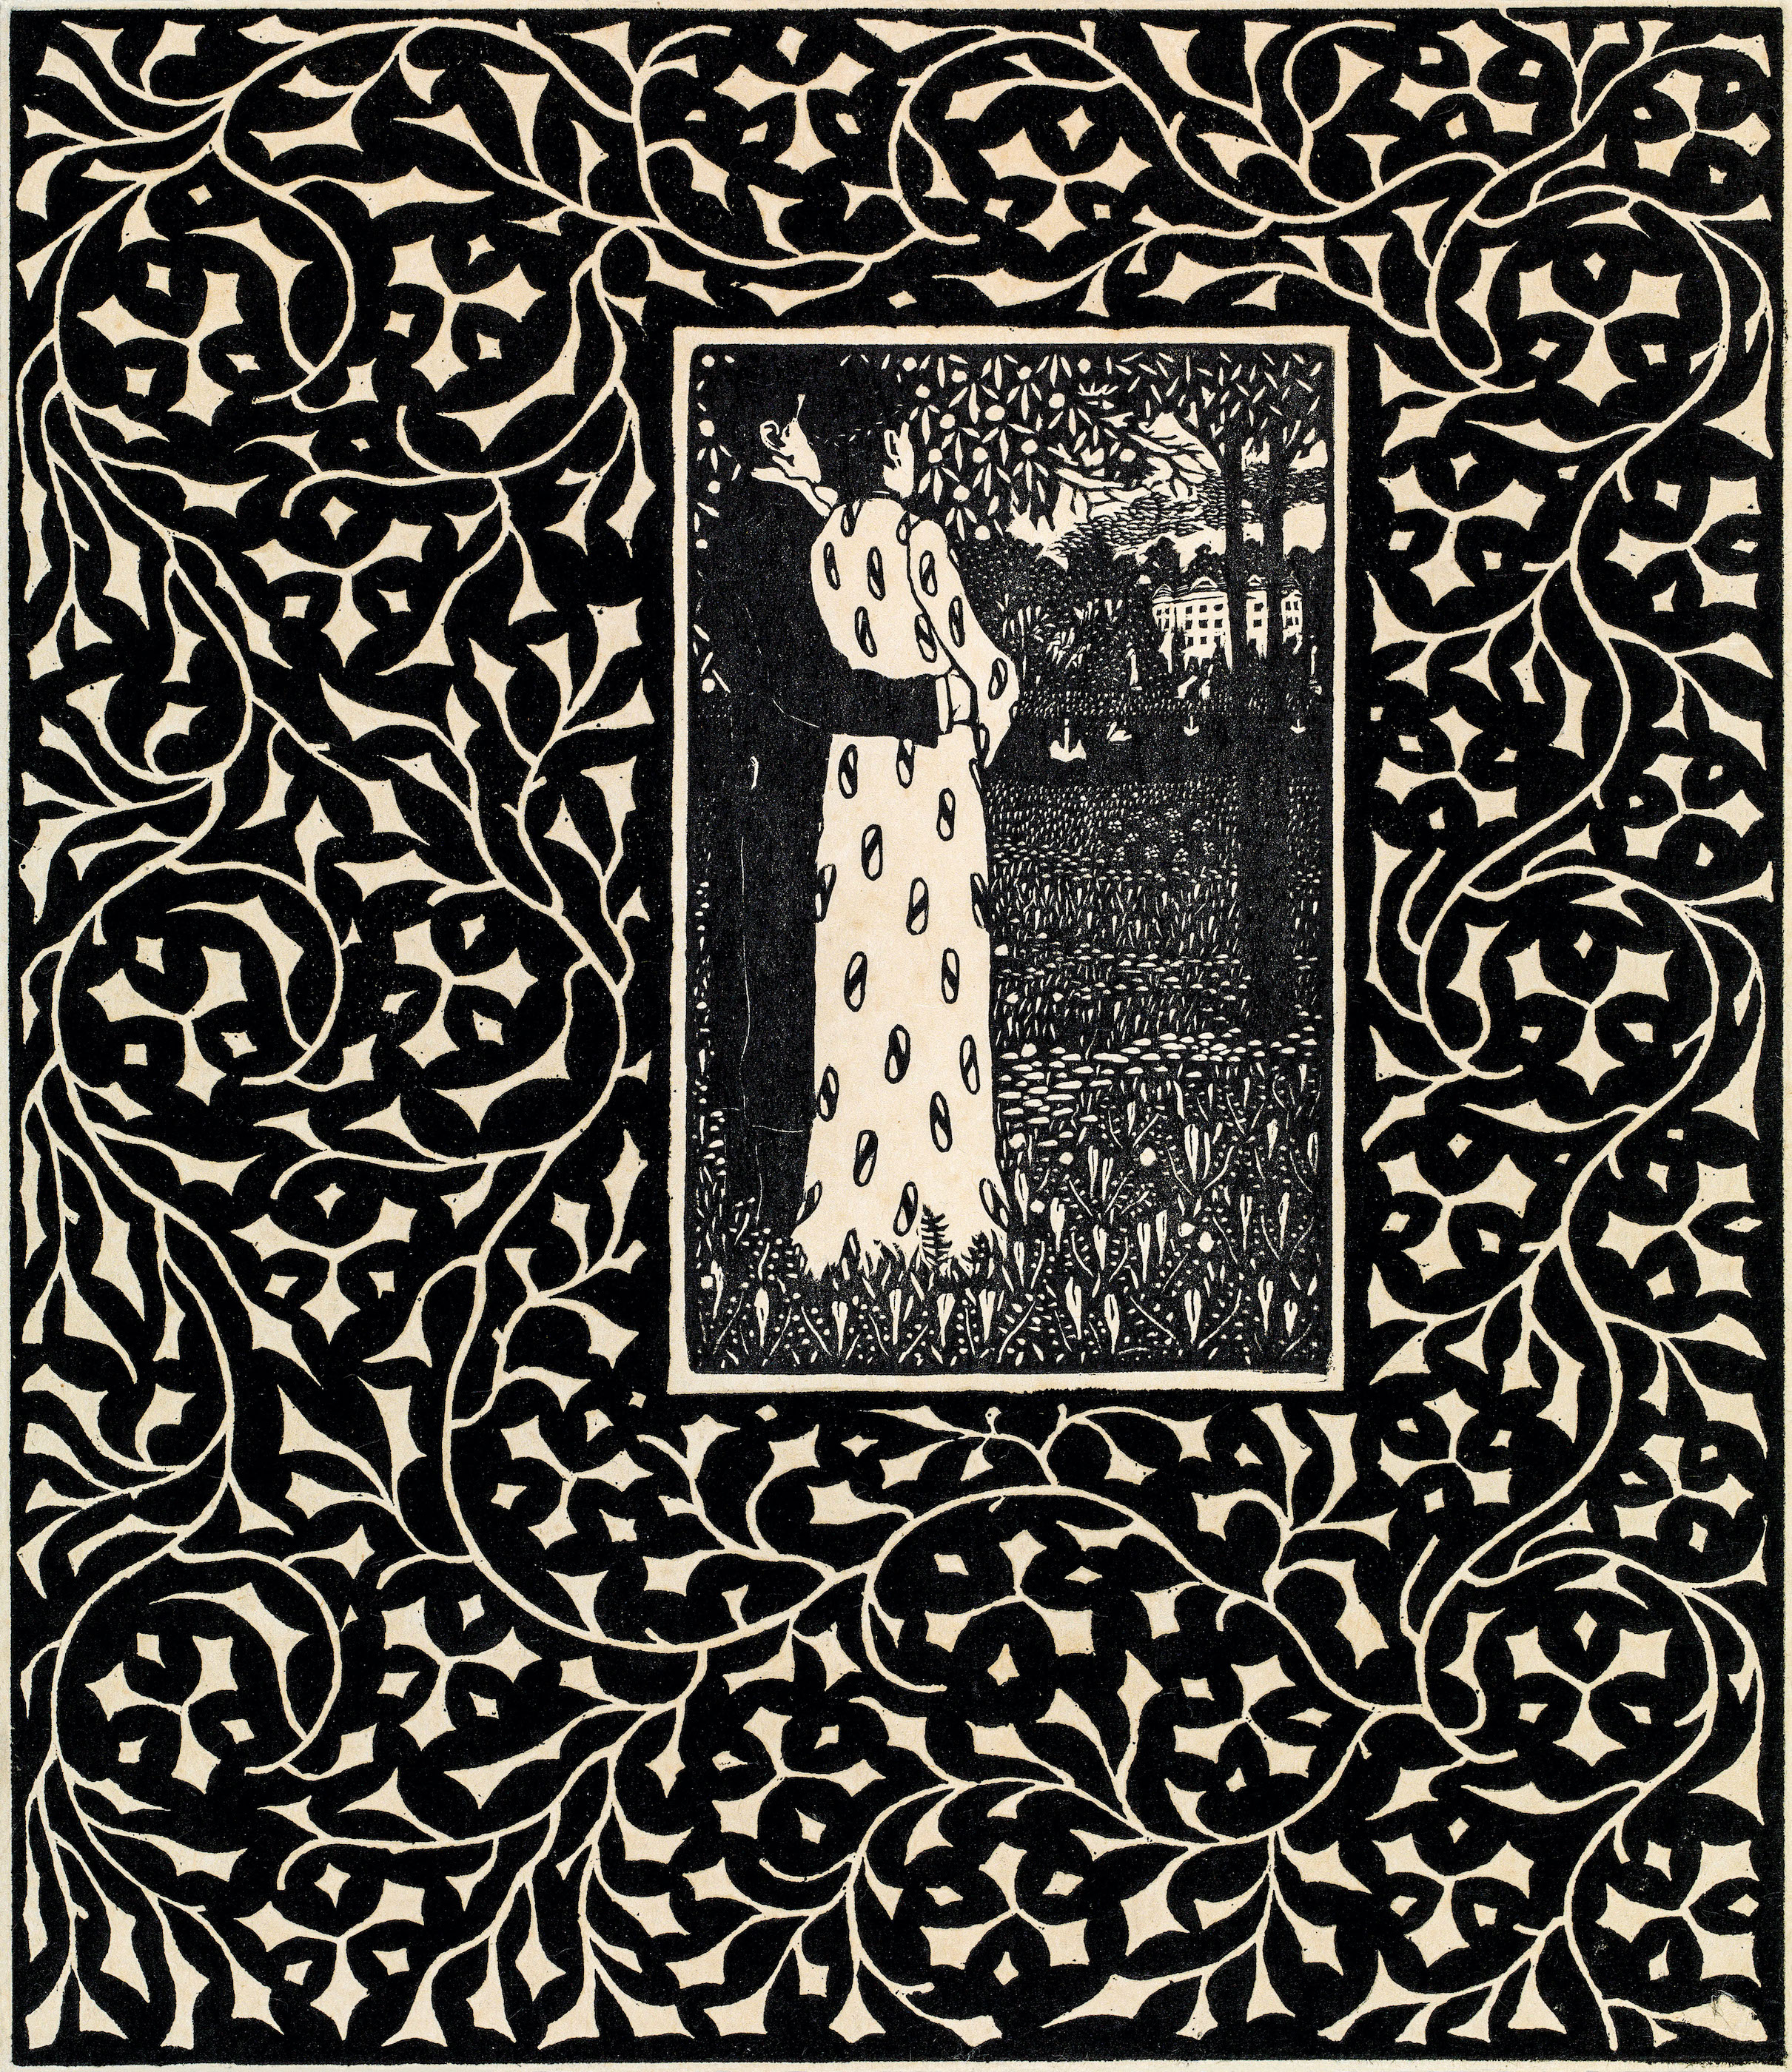 Čtyři období 1906 by Carl Krenek - 1906 - 26,6 x 22,1 cm 